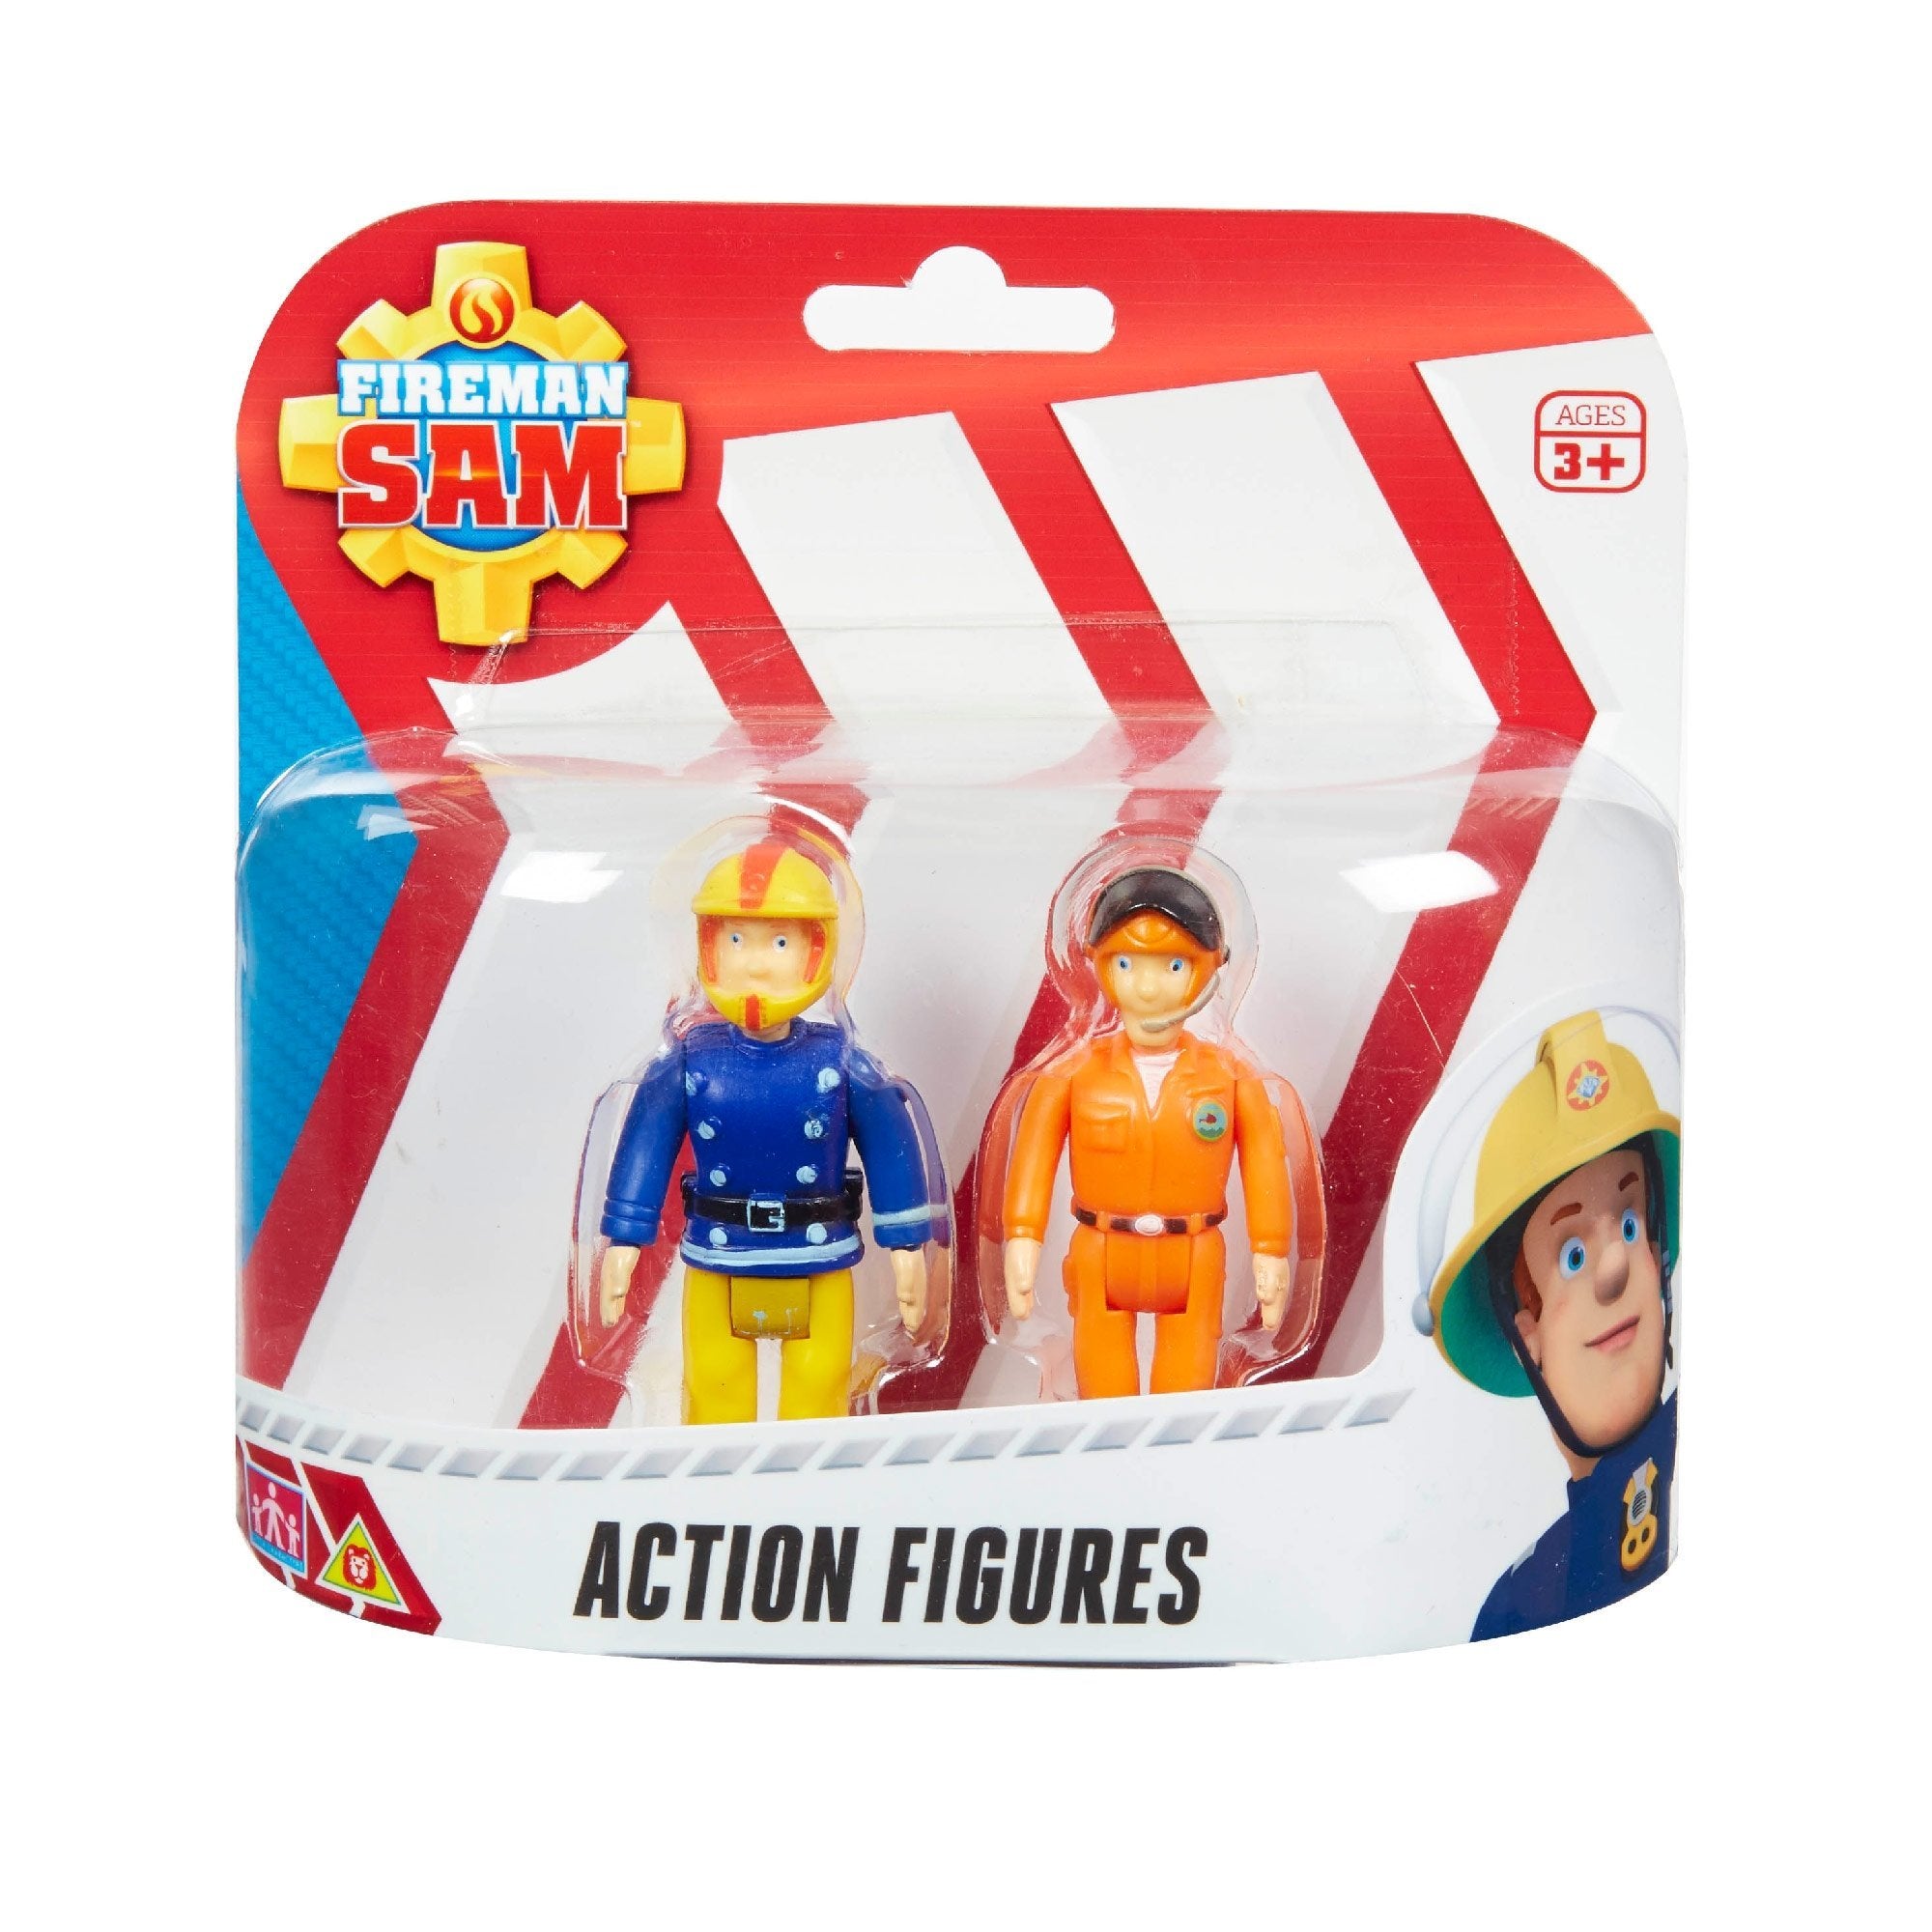 זוג דמויות סמי הכבאי סמי אופנוען ותום הטייס - zrizi toys